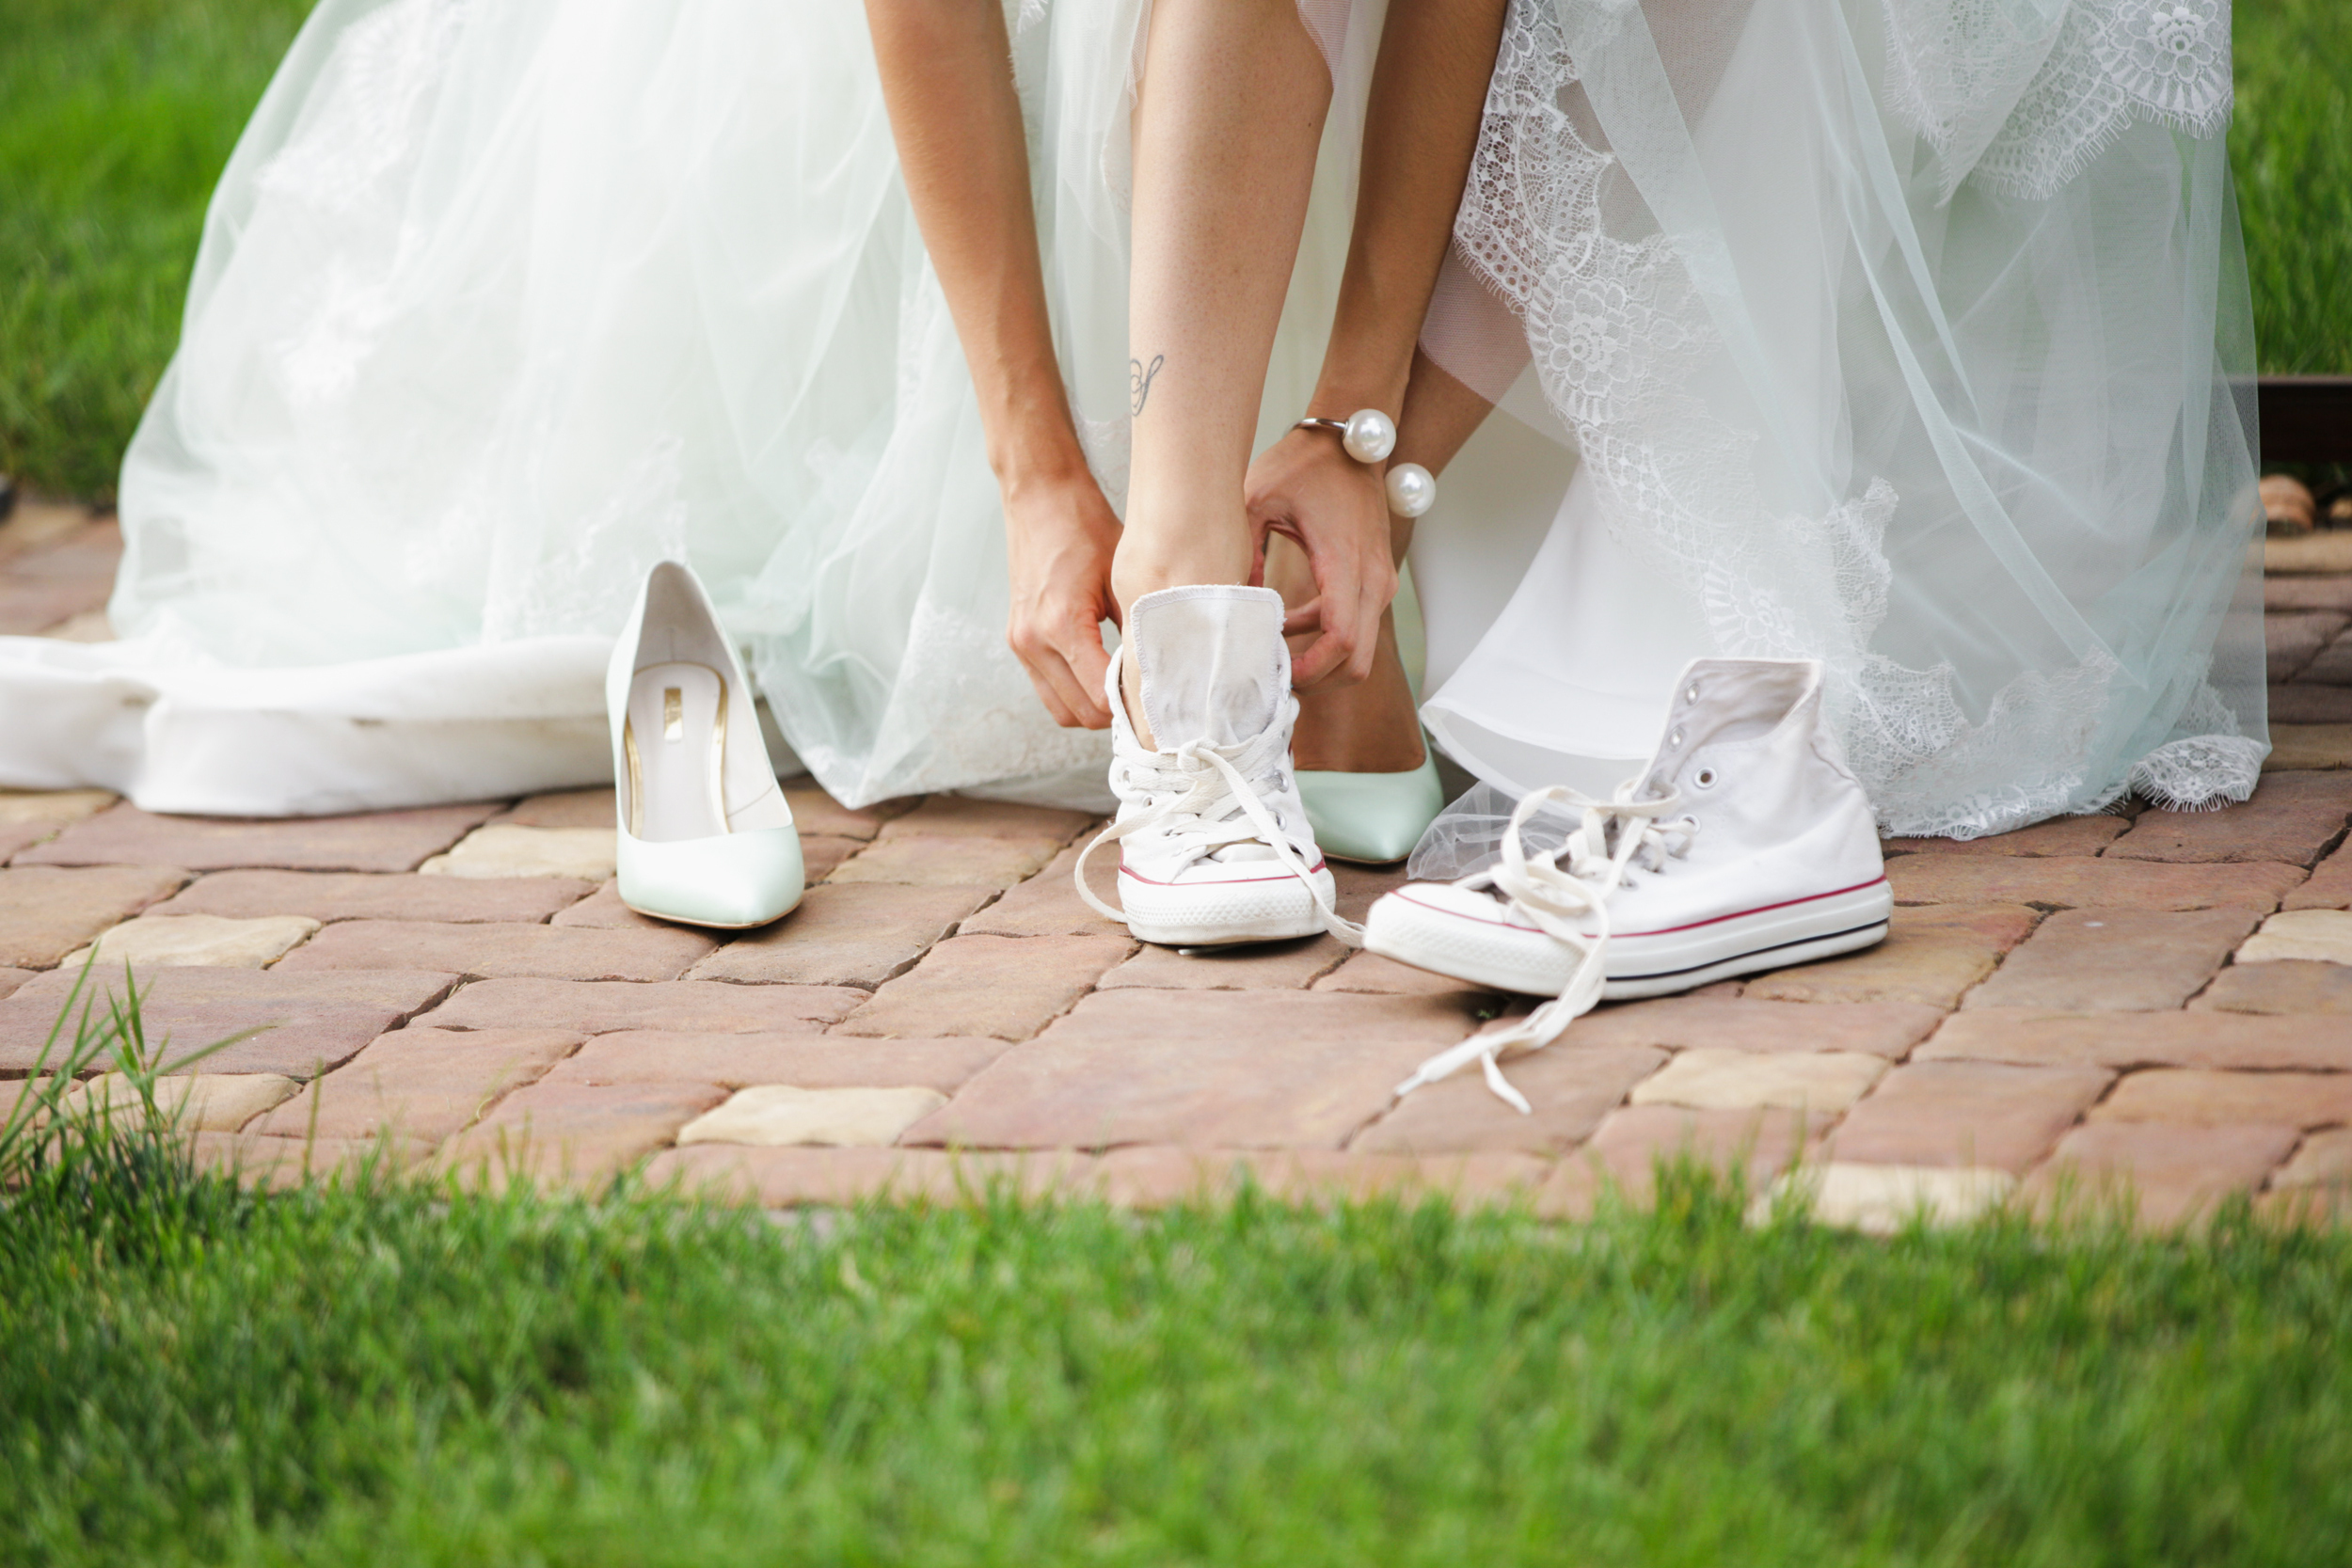 Советы невесте перед свадьбой. Фото 6